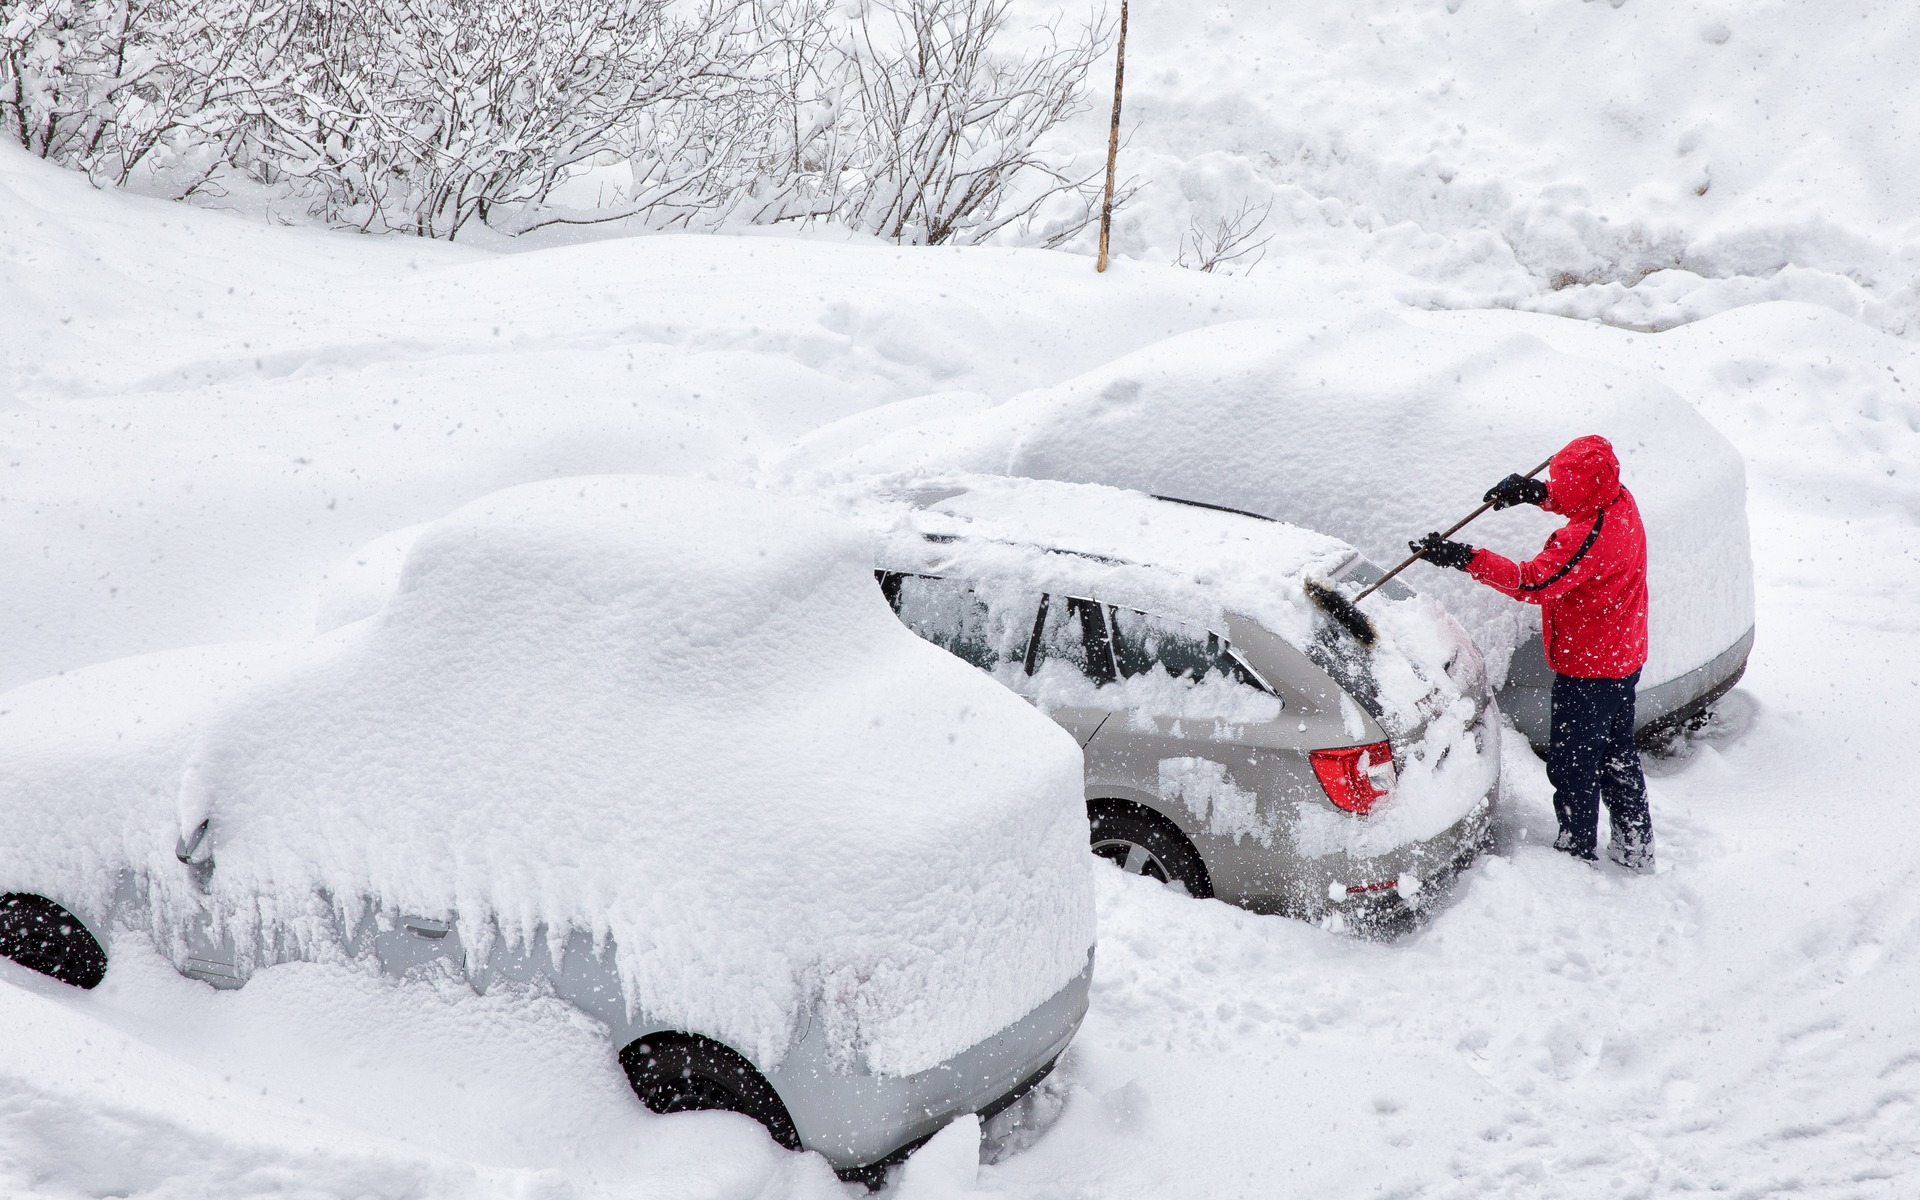 Cinq choses à faire pour bien affronter l'hiver en voiture - Guide